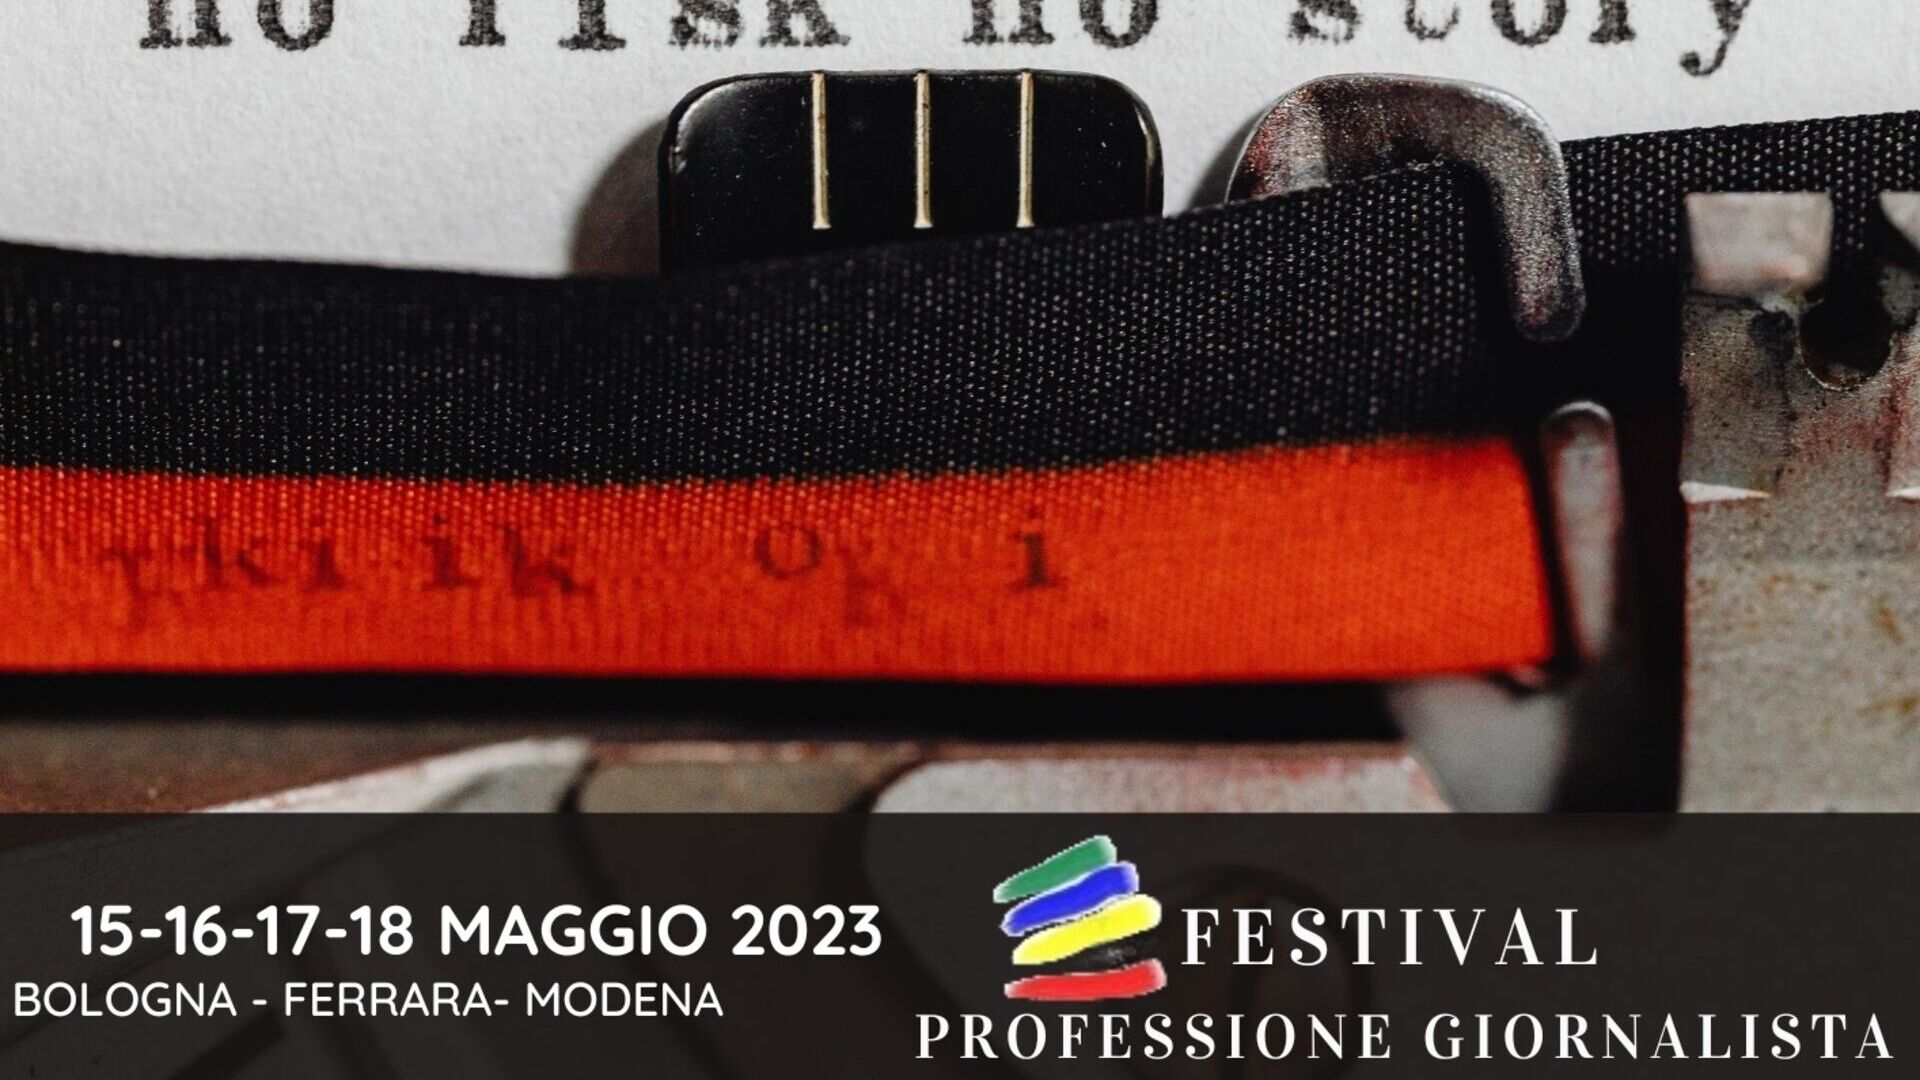 Professione del giornalista: il key visual dell’edizione 2023 del festival “Professione Giornalista” (Bologna, Ferrara, Modena, 15-16-17-18 maggio)